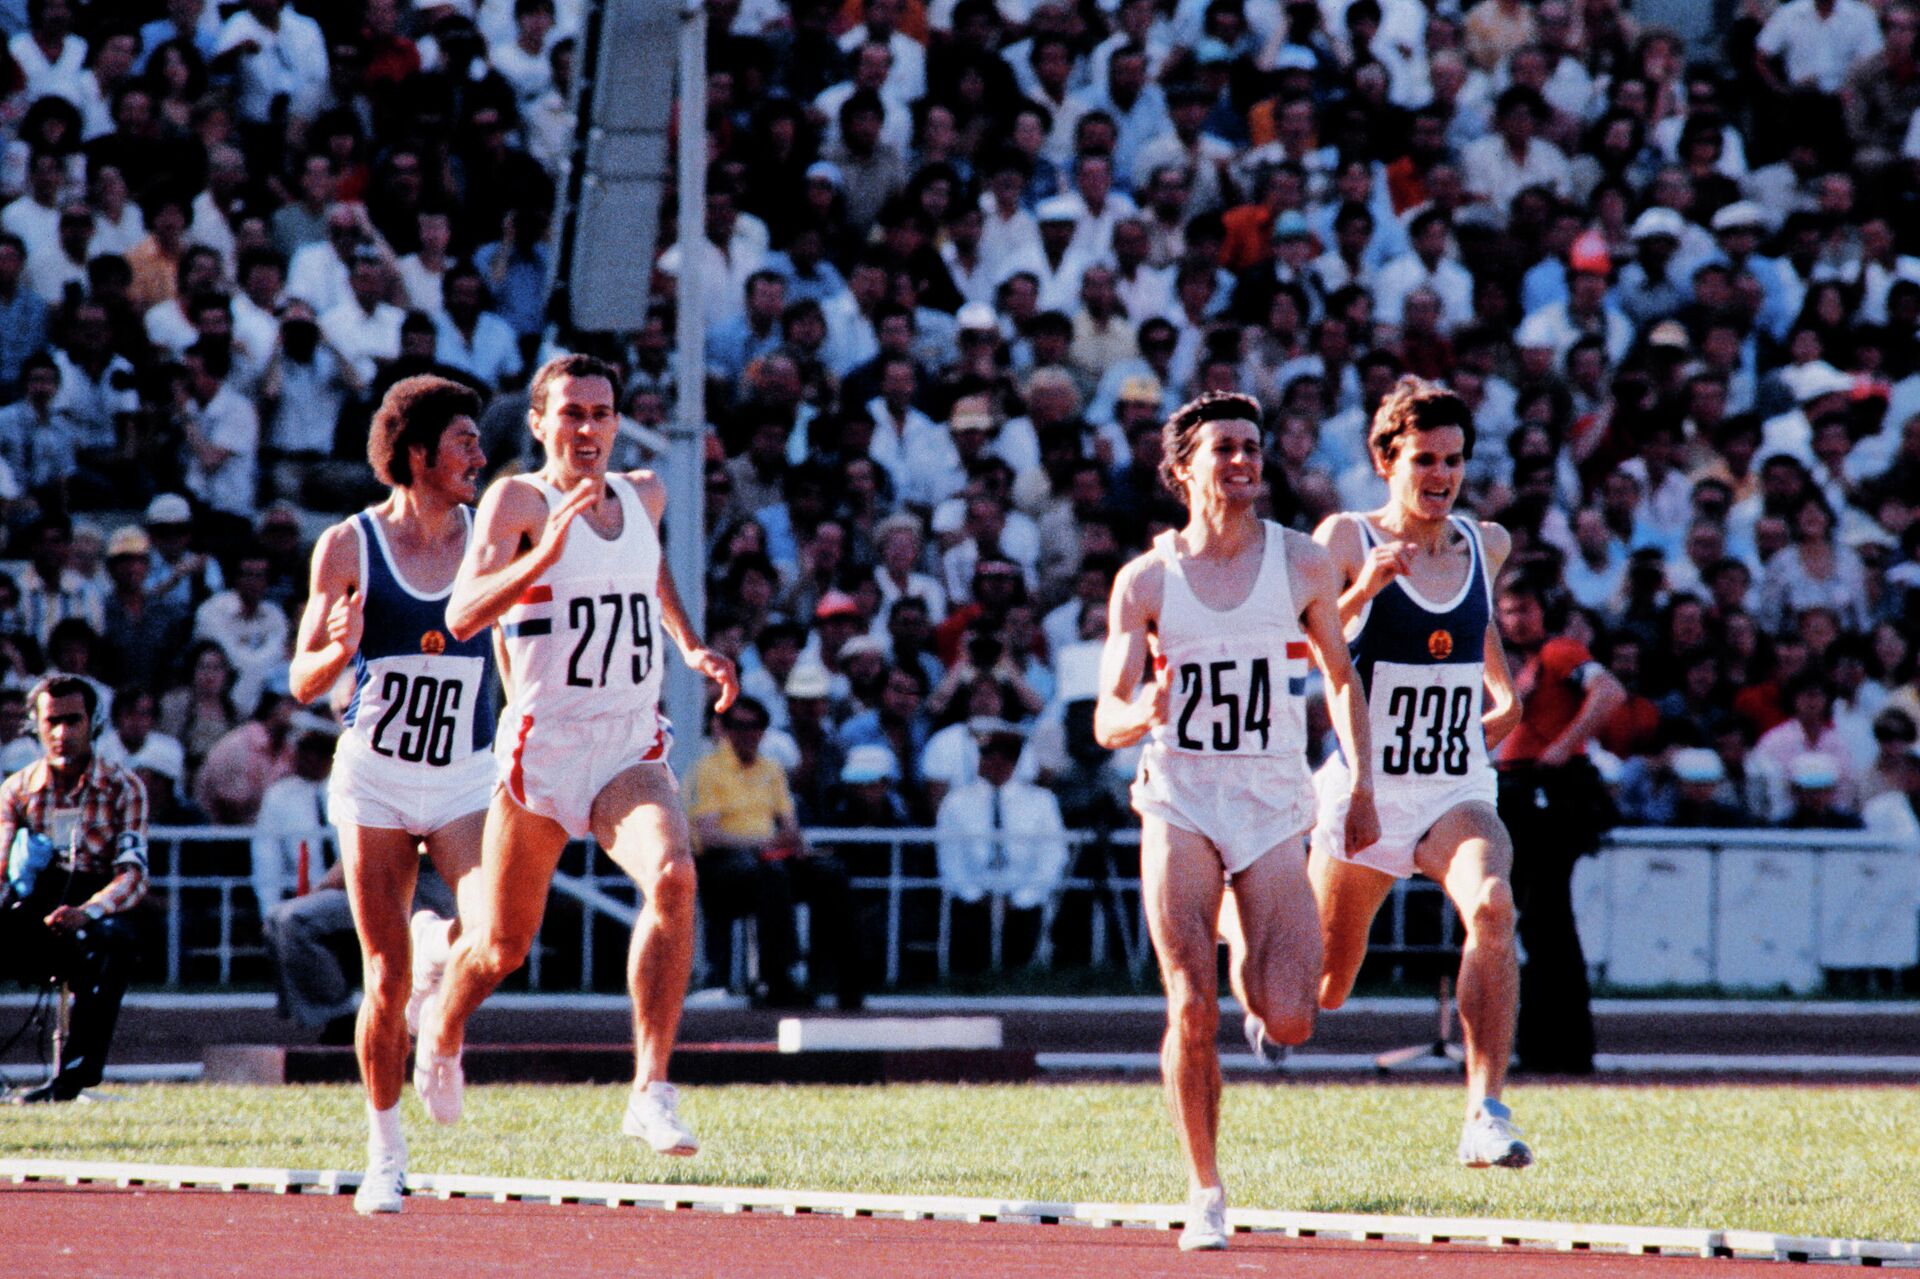 Себастьян Коэ (второй справа) и Стив Оветт (второй слева) на финальном забеге на 1500 метров на Олимпийских играх 1980 года в Москве - РИА Новости, 1920, 16.07.2021